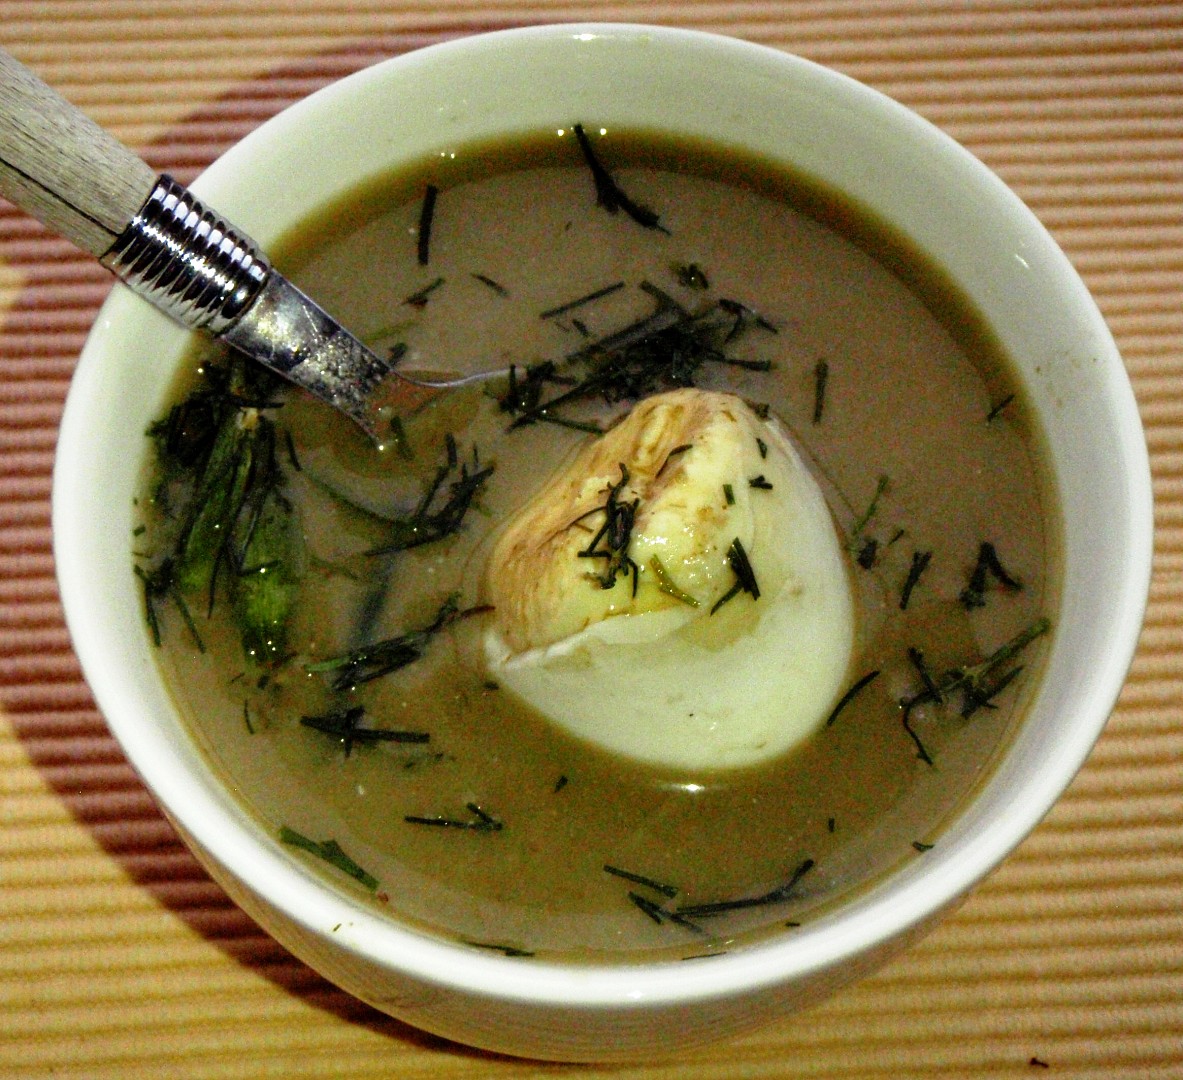 Koprová polévka s houbami a cottage